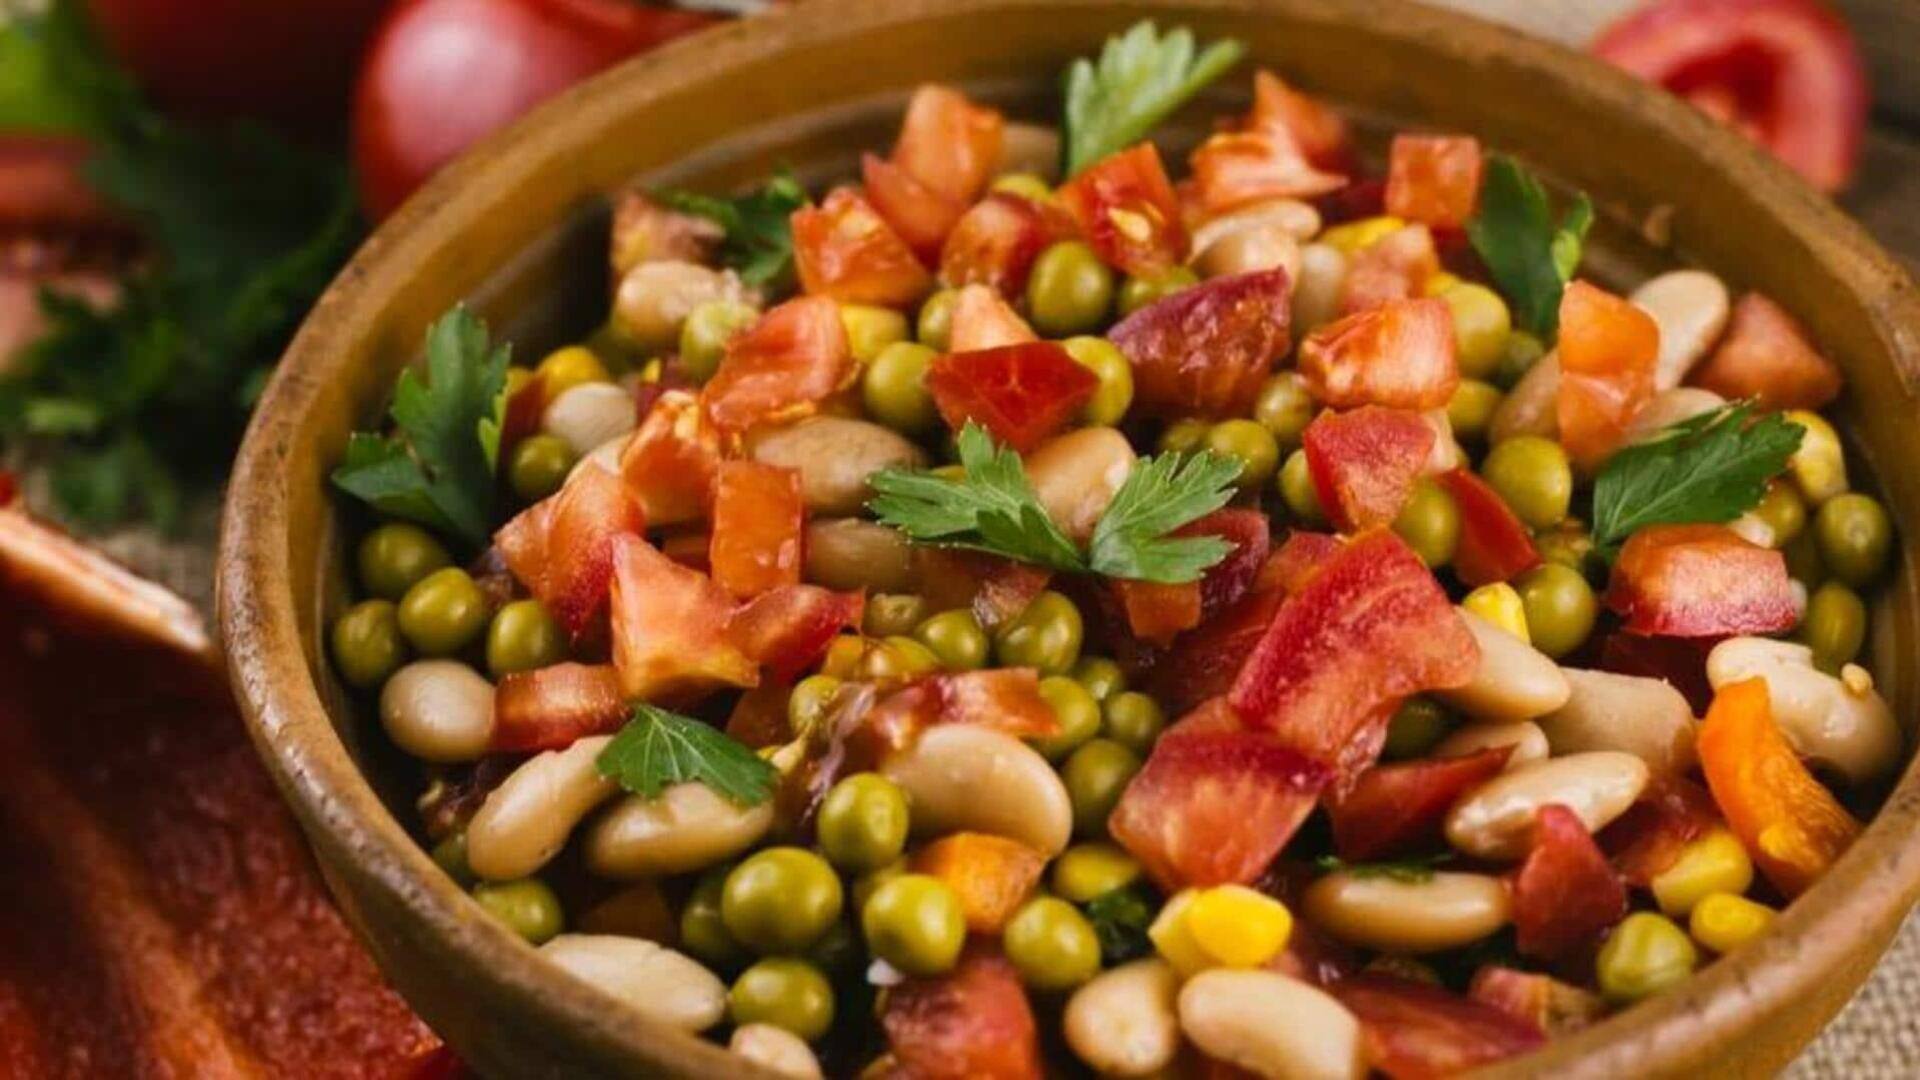 Cobalah resep salad kacang Meksiko ini untuk hari yang penuh cita rasa